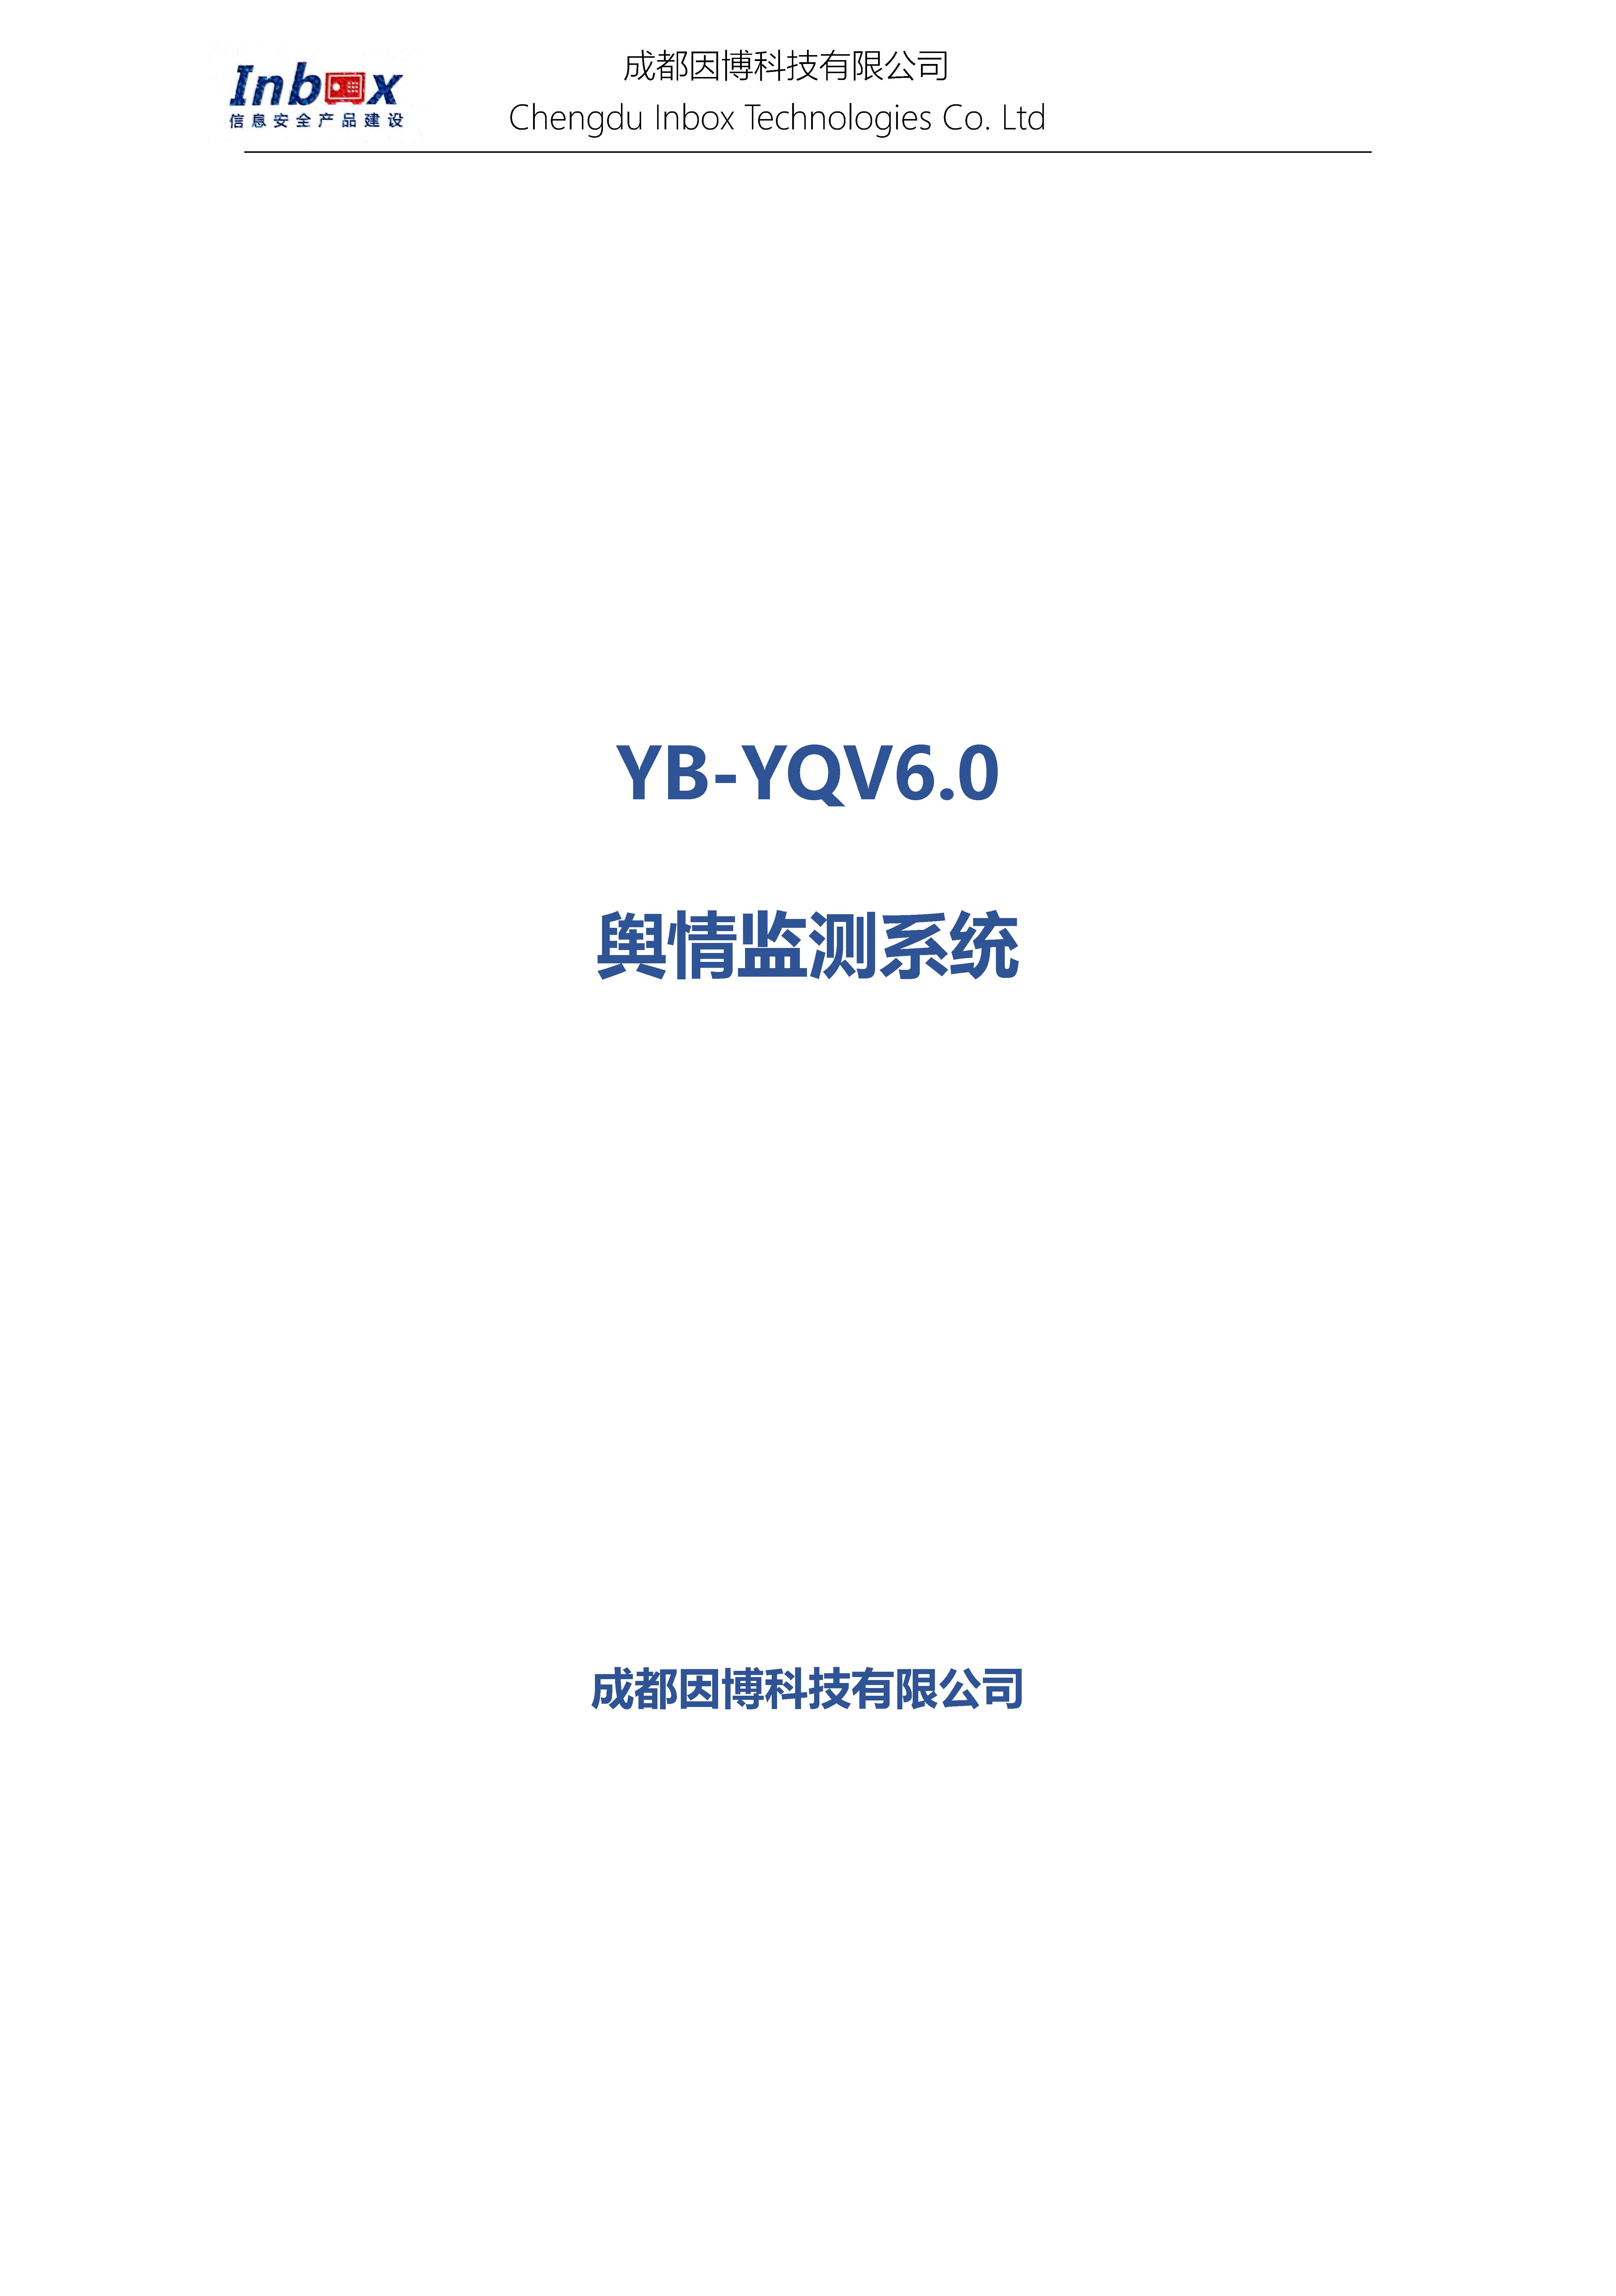 舆情监测系统-YB-YQV6.0_页面_01.jpg